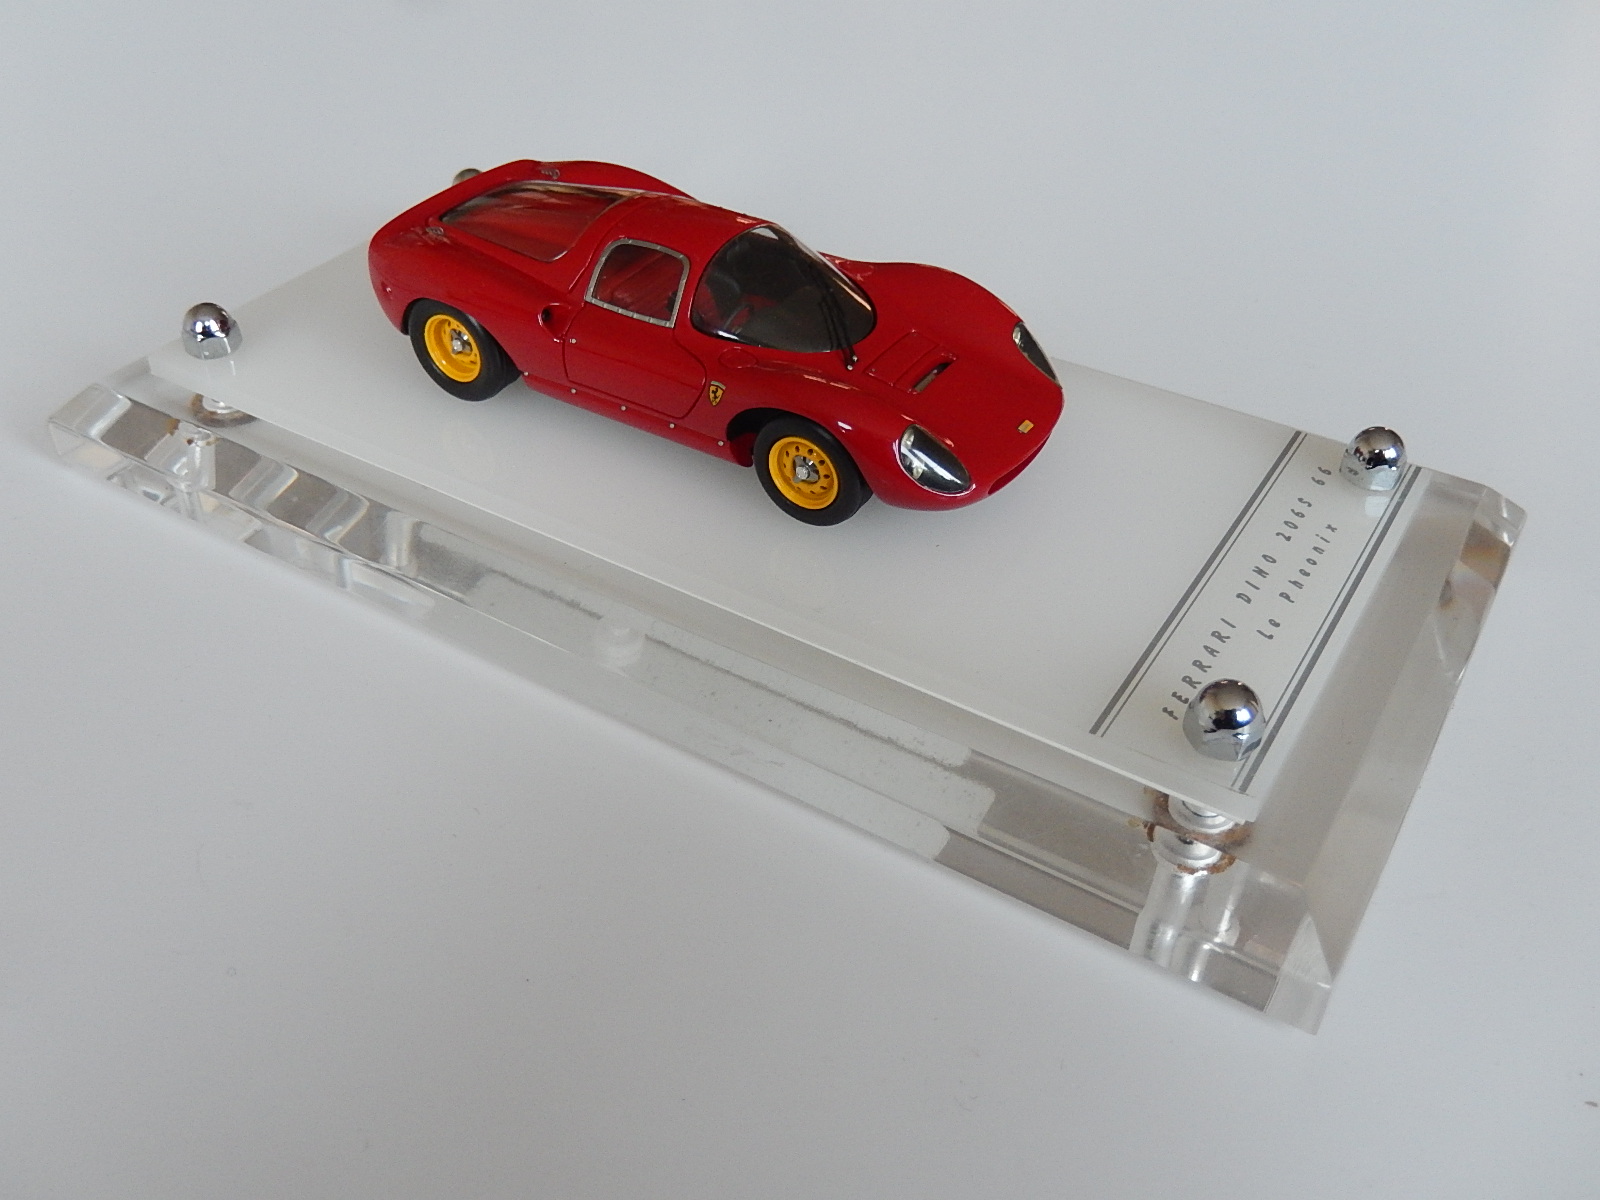 Momo factory : Ferrari Dino 206 S 1966 --> SOLD, Modelart111